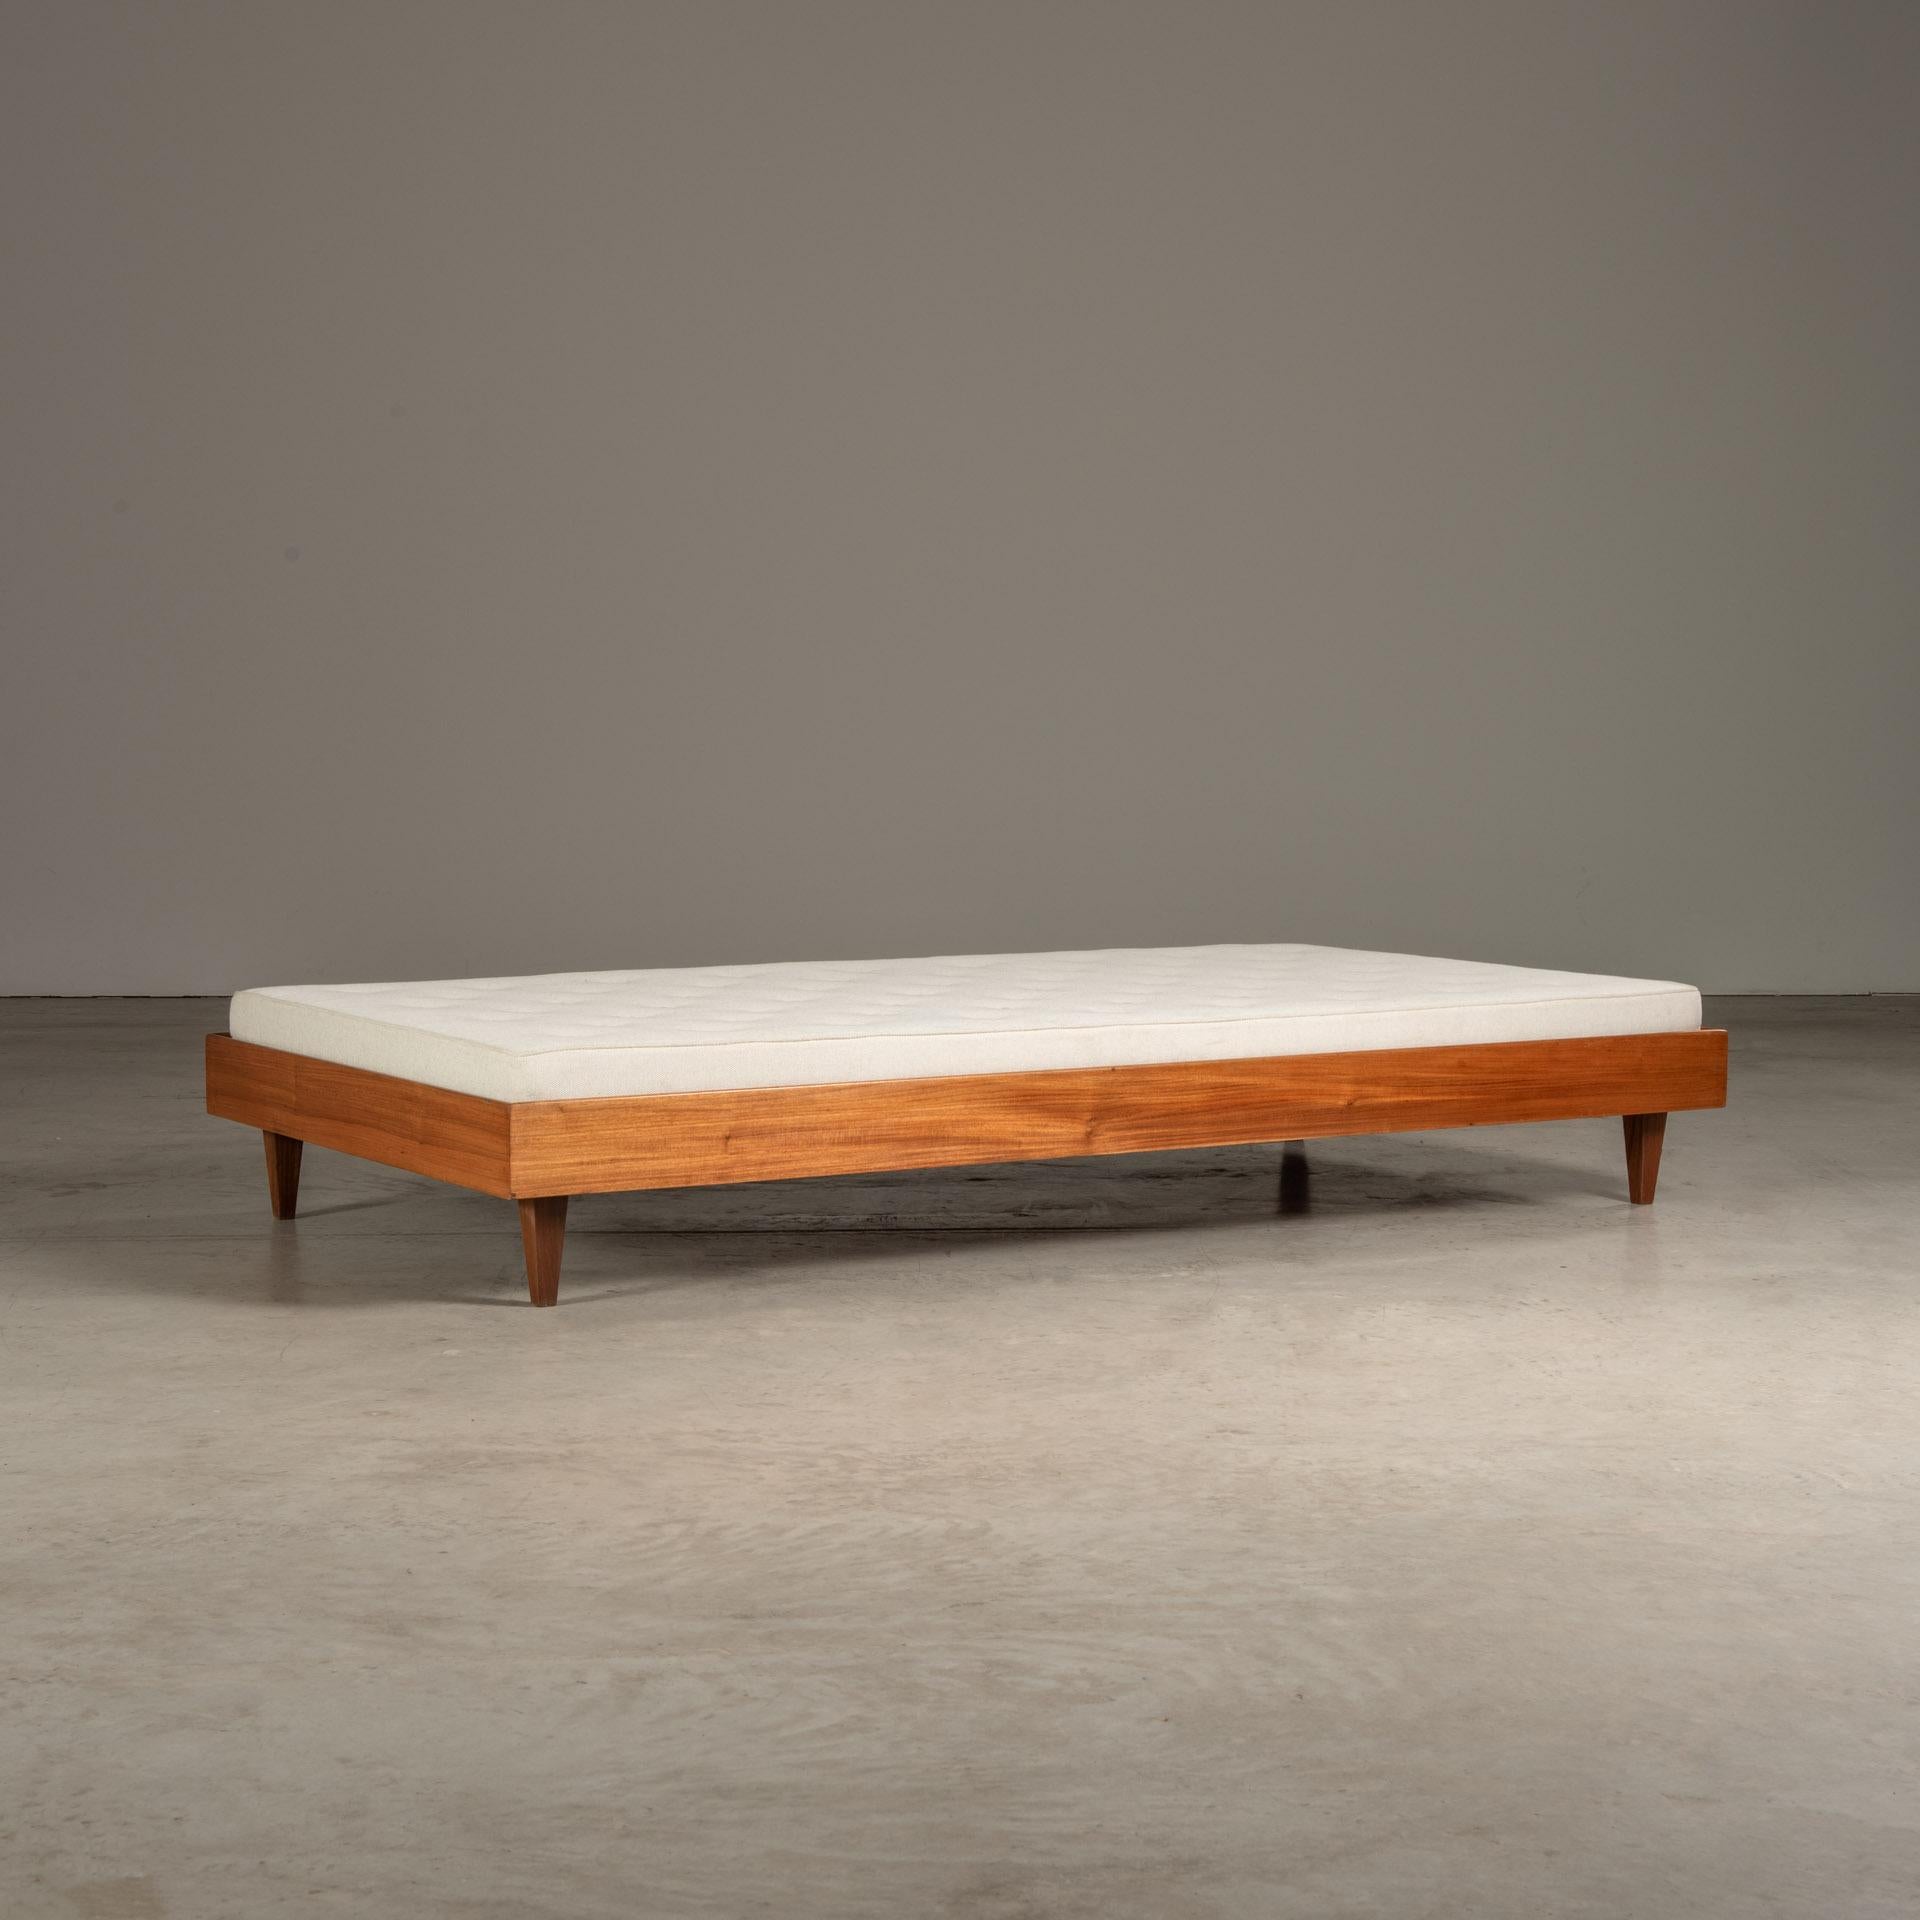 Le lit de jour, fabriqué par Liceu de Artes e Ofícios, est un excellent exemple du mobilier brésilien du milieu du XXe siècle, réputé pour son mélange de principes modernistes et de matériaux et techniques brésiliens traditionnels.

Le Liceu de